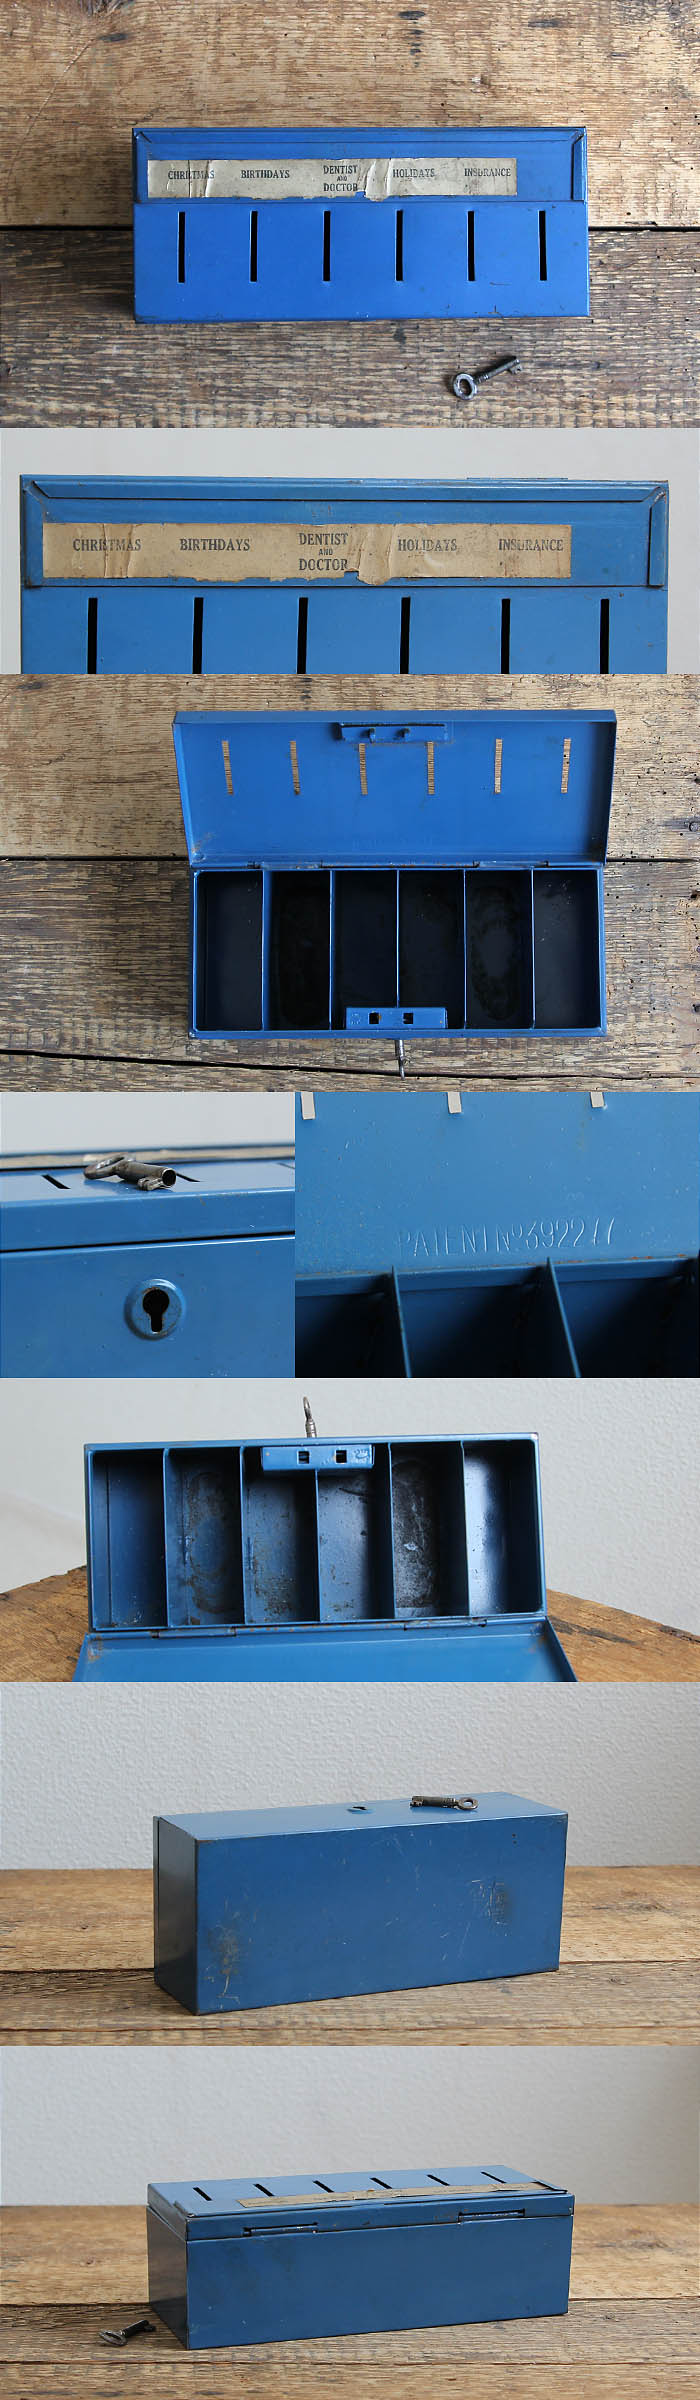 イギリス アンティーク 鍵付き スリフトボックス 貯金箱 THRIFT BOX キャッシュボックス V-241